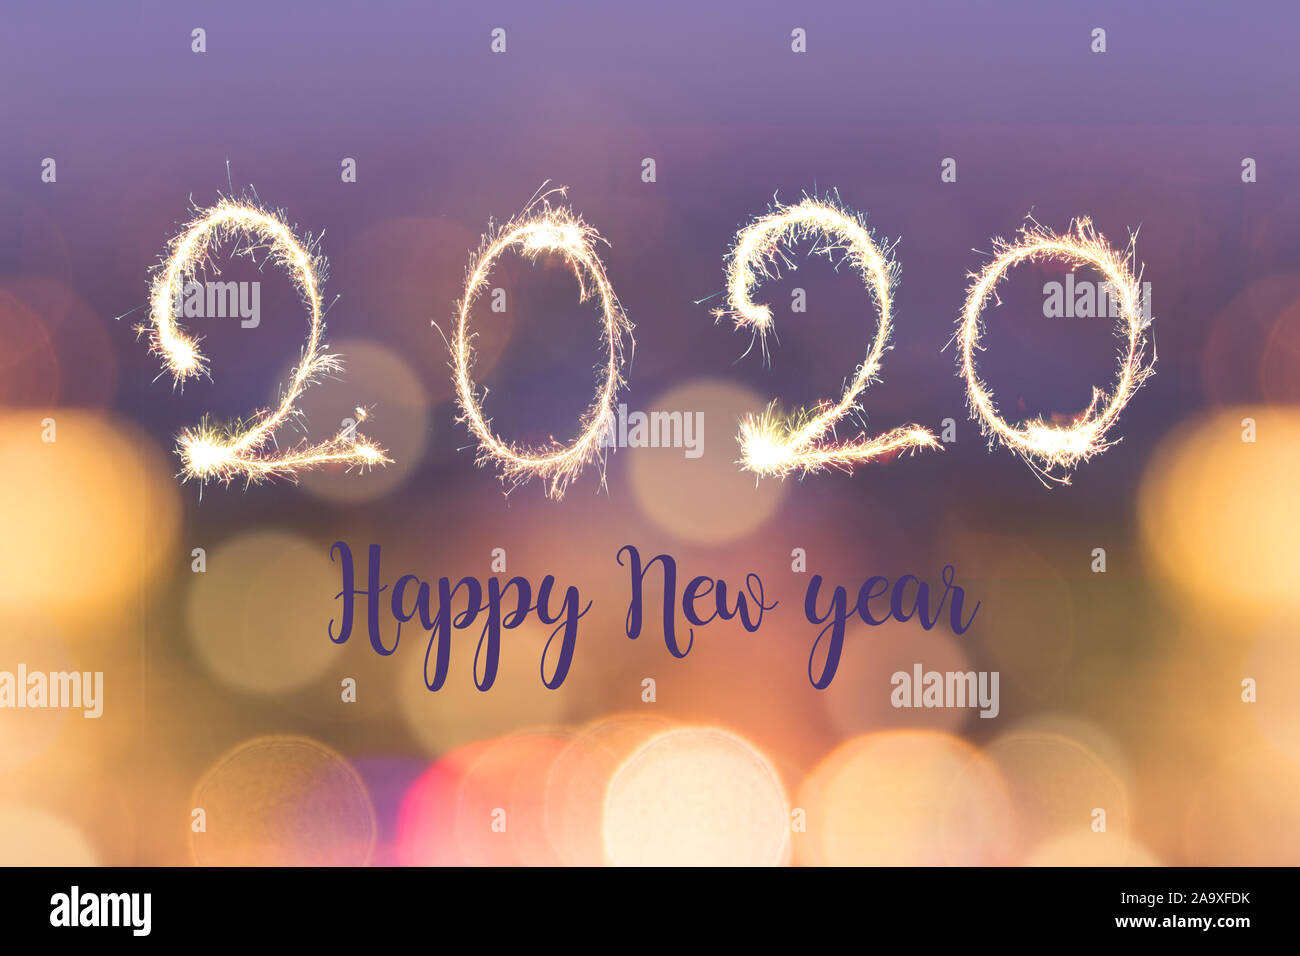 Felice anno nuovo 2020 scritto con sparkes su sfocate luci bokeh sfondo, holiday greeting card Foto Stock